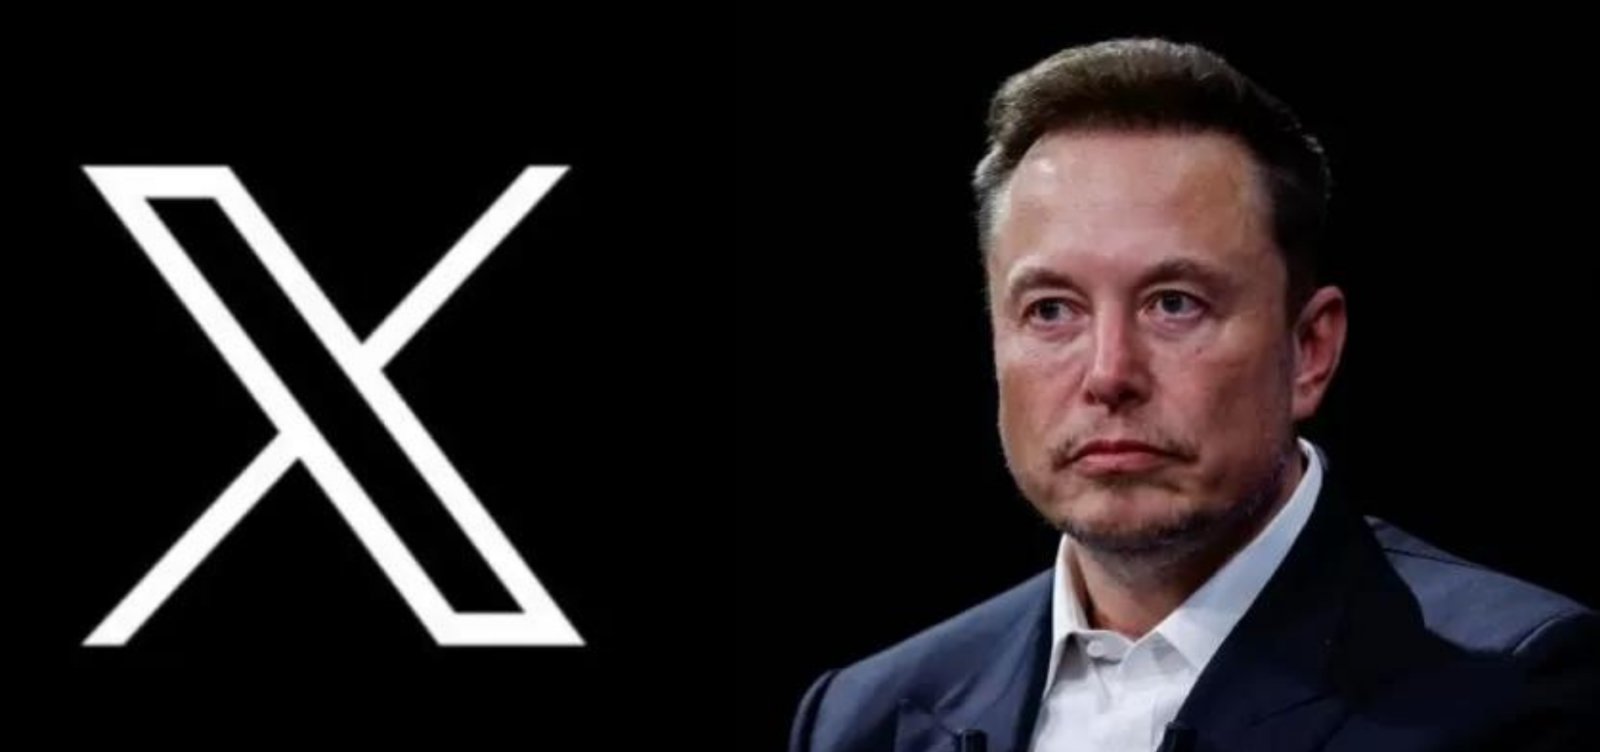 Ministério Público pede ao TCU extinção de contratos do governo com empresa de Elon Musk